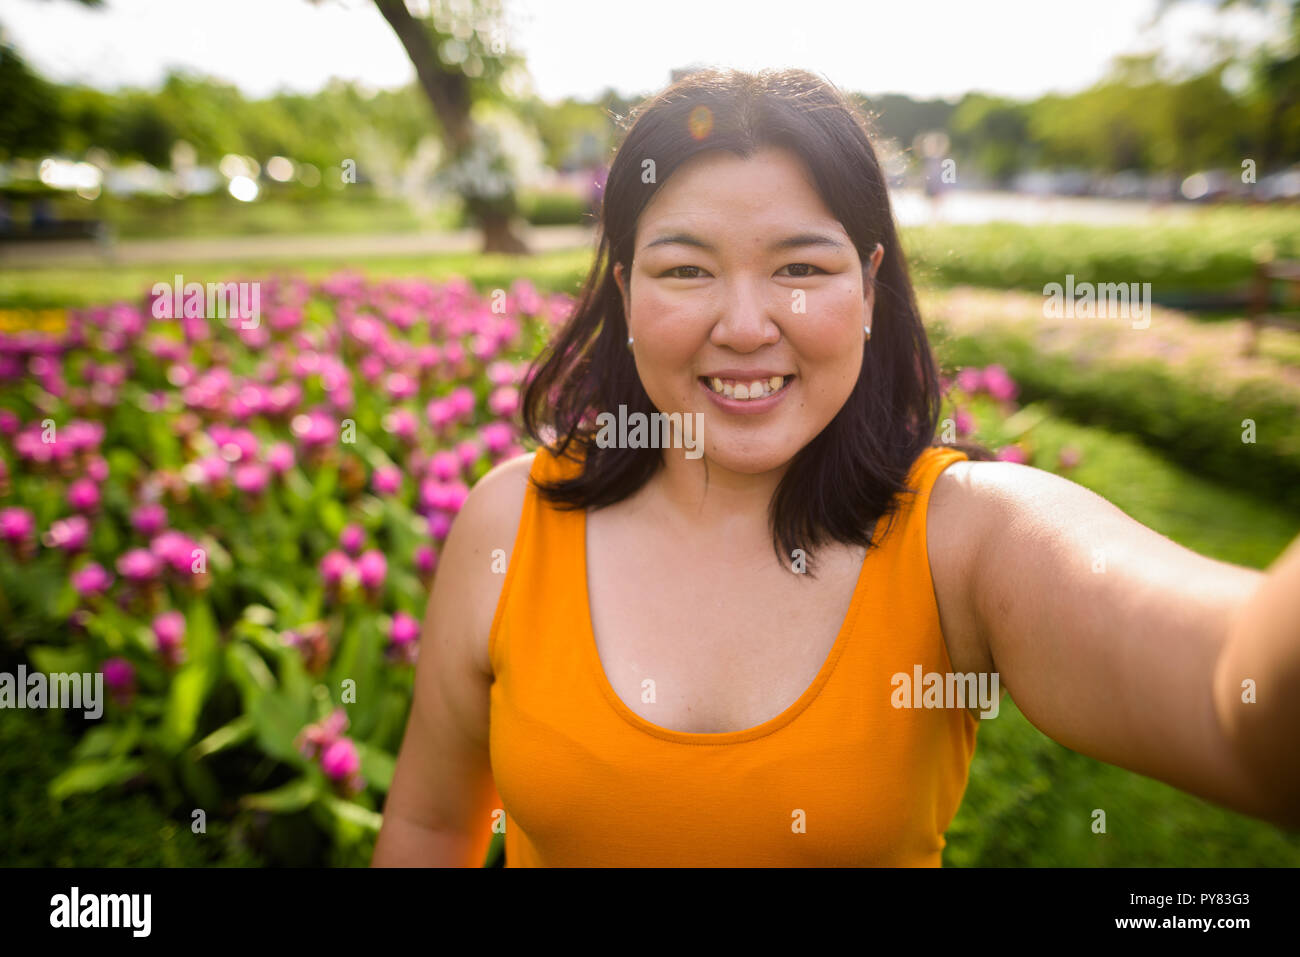 Personale punto di vista di bella donna sovrappeso tenendo selfie in posizione di parcheggio Foto Stock